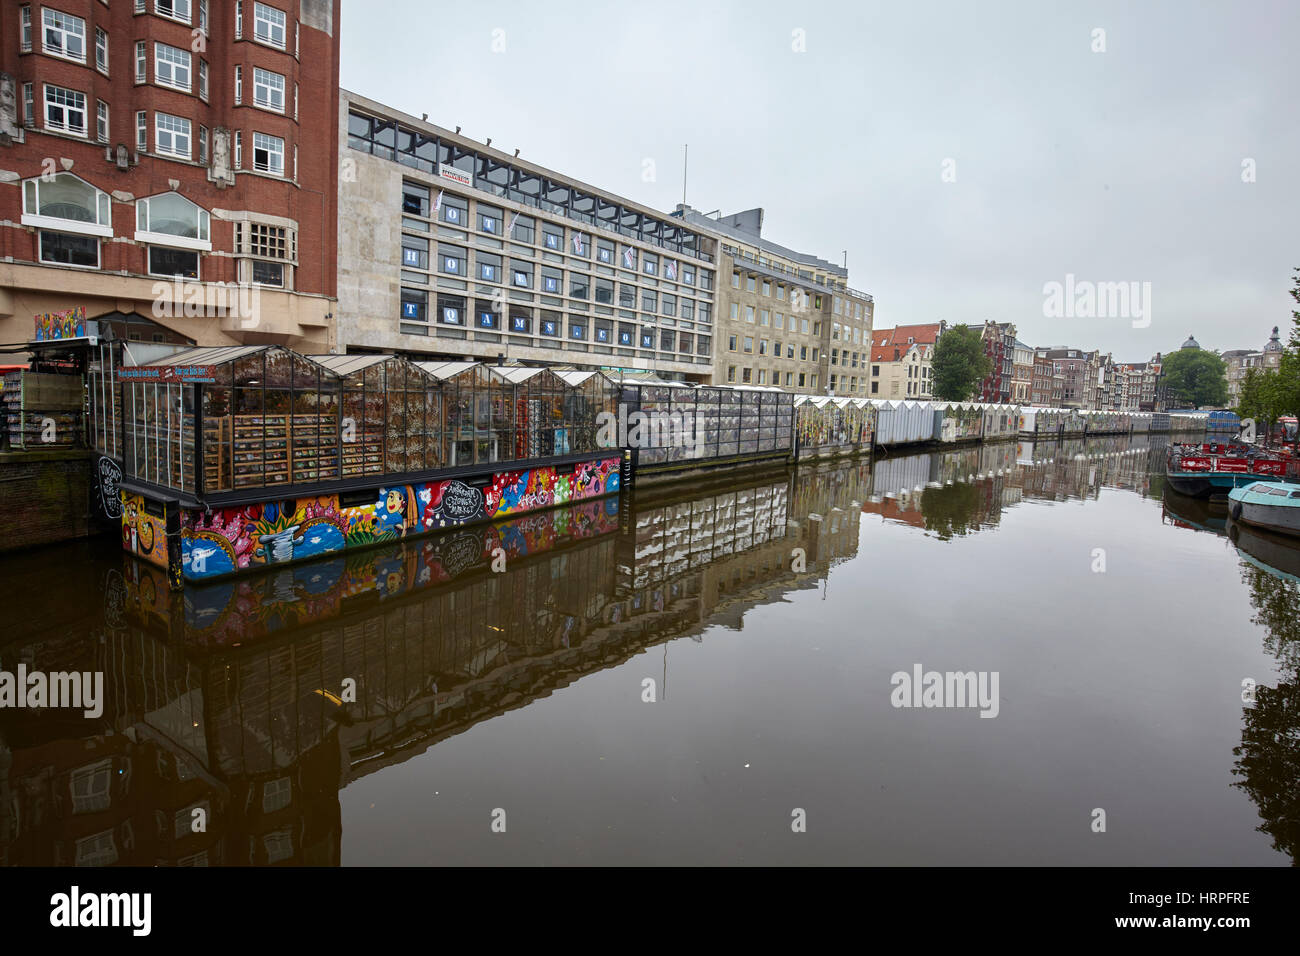 Fleur de moriaan cale flottant dans le canal Singel, Amsterdam, Pays-Bas Banque D'Images